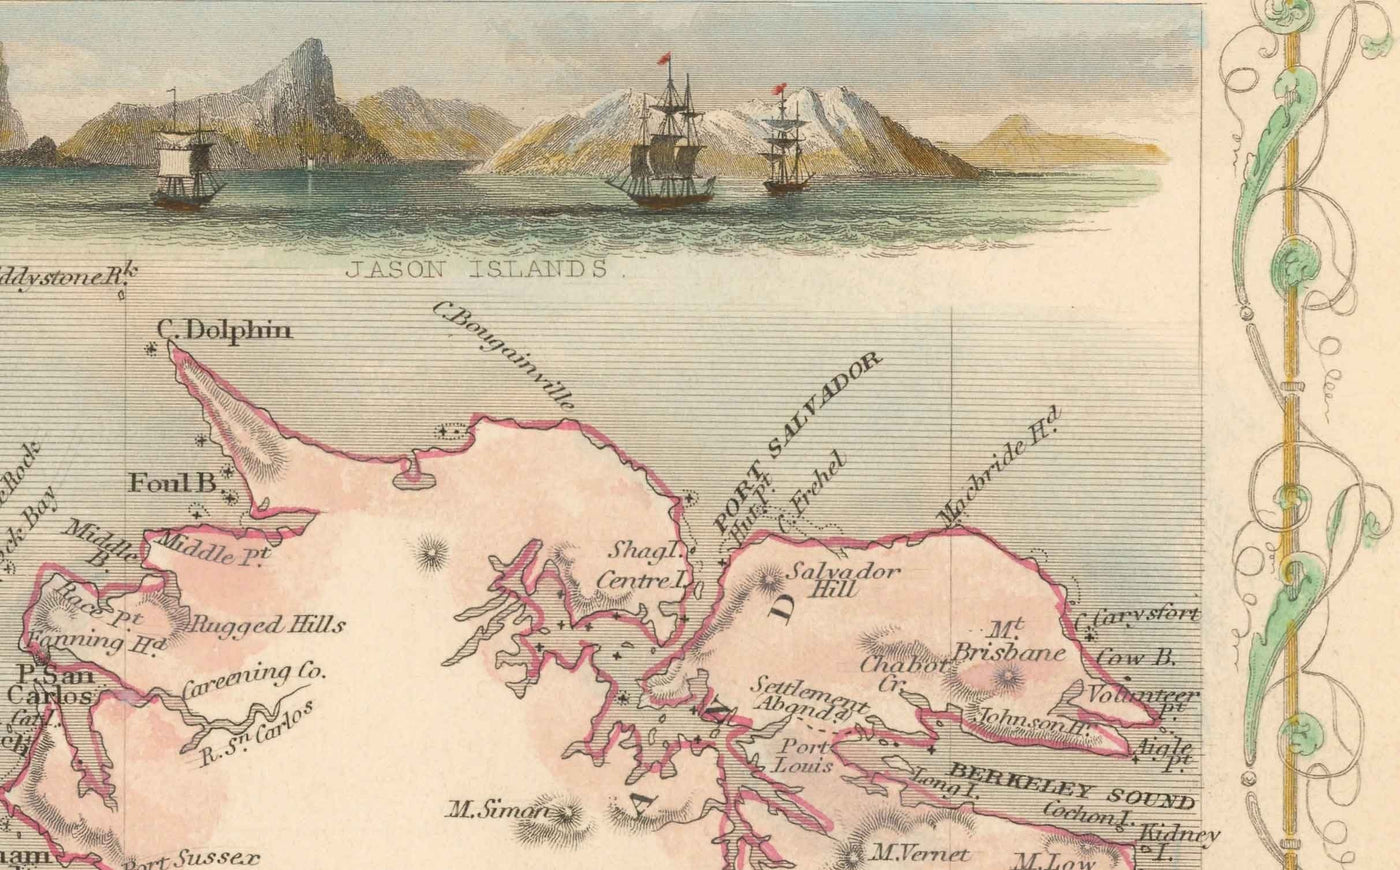 Ancienne carte Falkland Islands & Patagonia, 1851 - Amérique du Sud, Cap Horn, Malvinas, Tierra del Fuego, Empire britannique